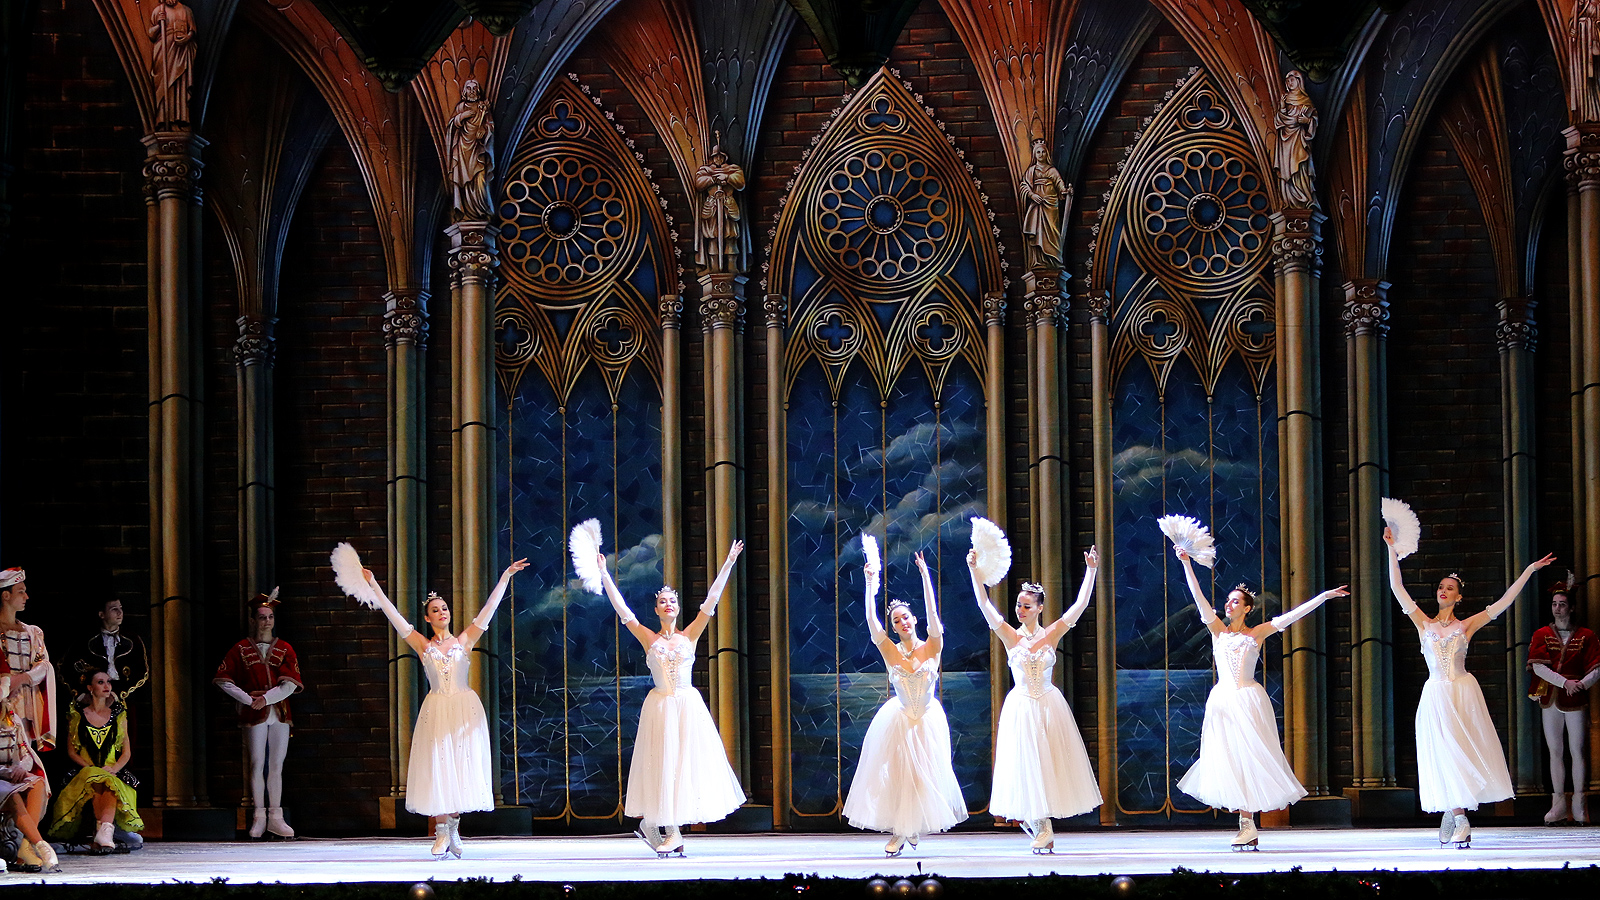 Спектакъла на класиката "Лебедово езеро" в изпълнение на Руски държавен балет на лед "Санкт Петeрбург" в зала 1 на НДК